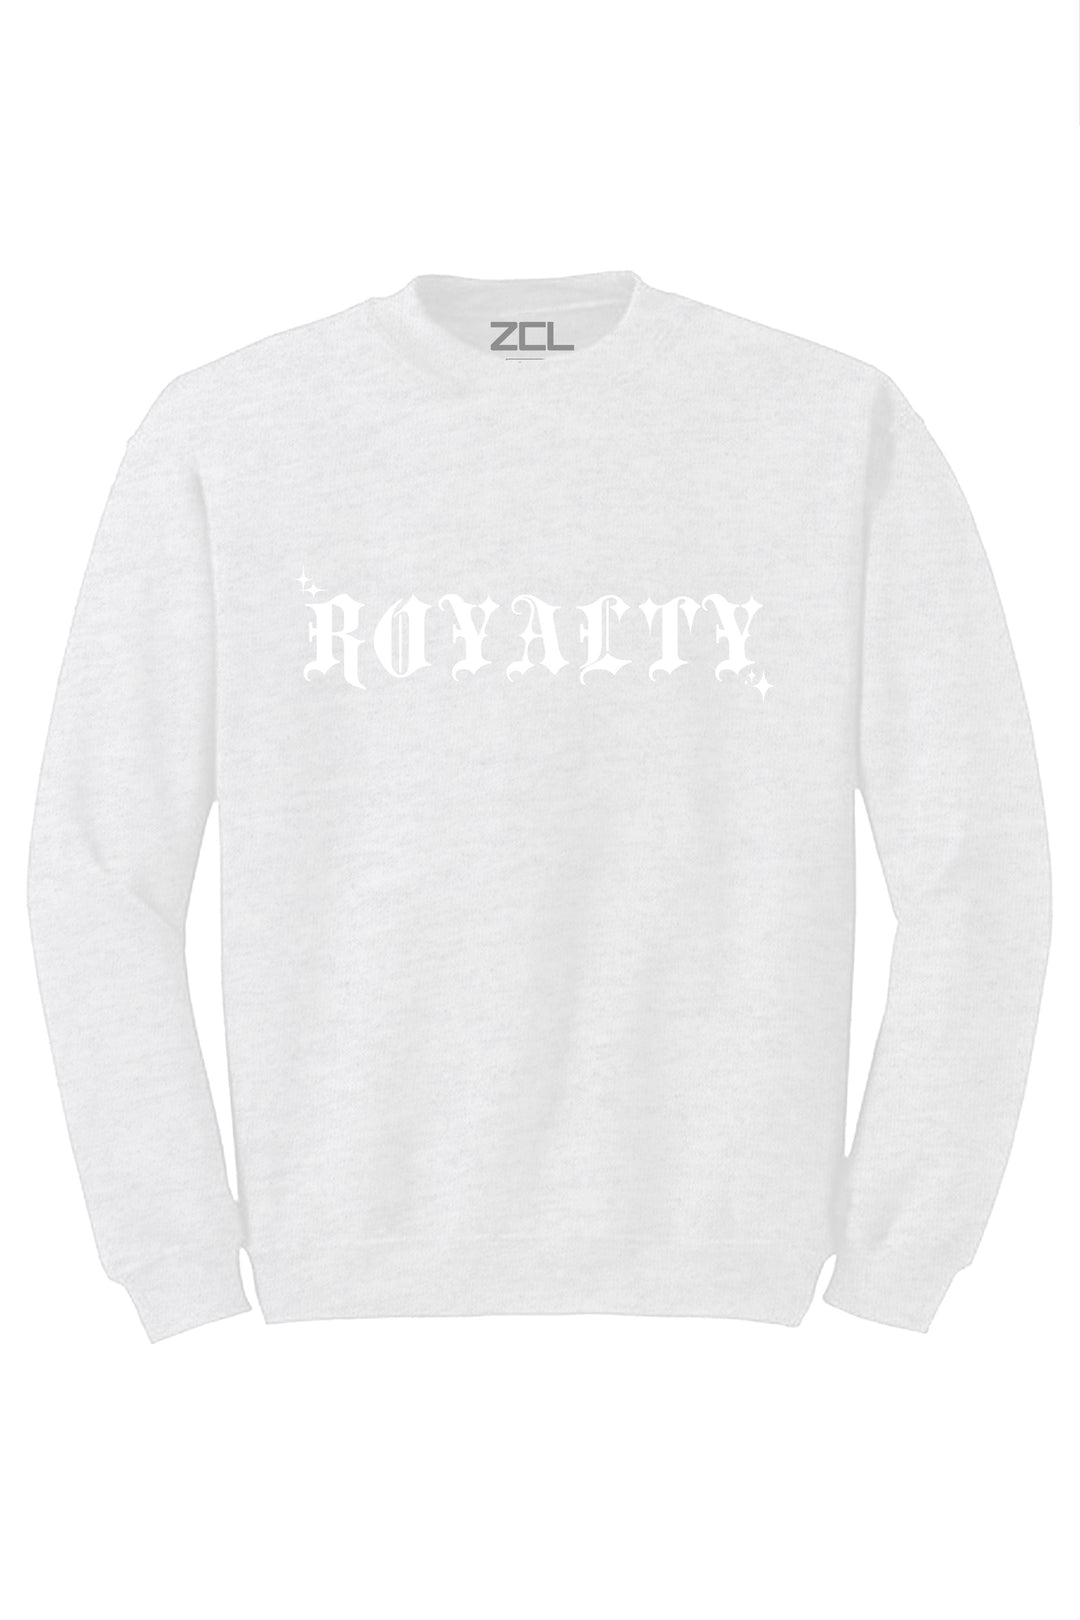 Royalty Crewneck Sweatshirt (White Logo) - Zamage